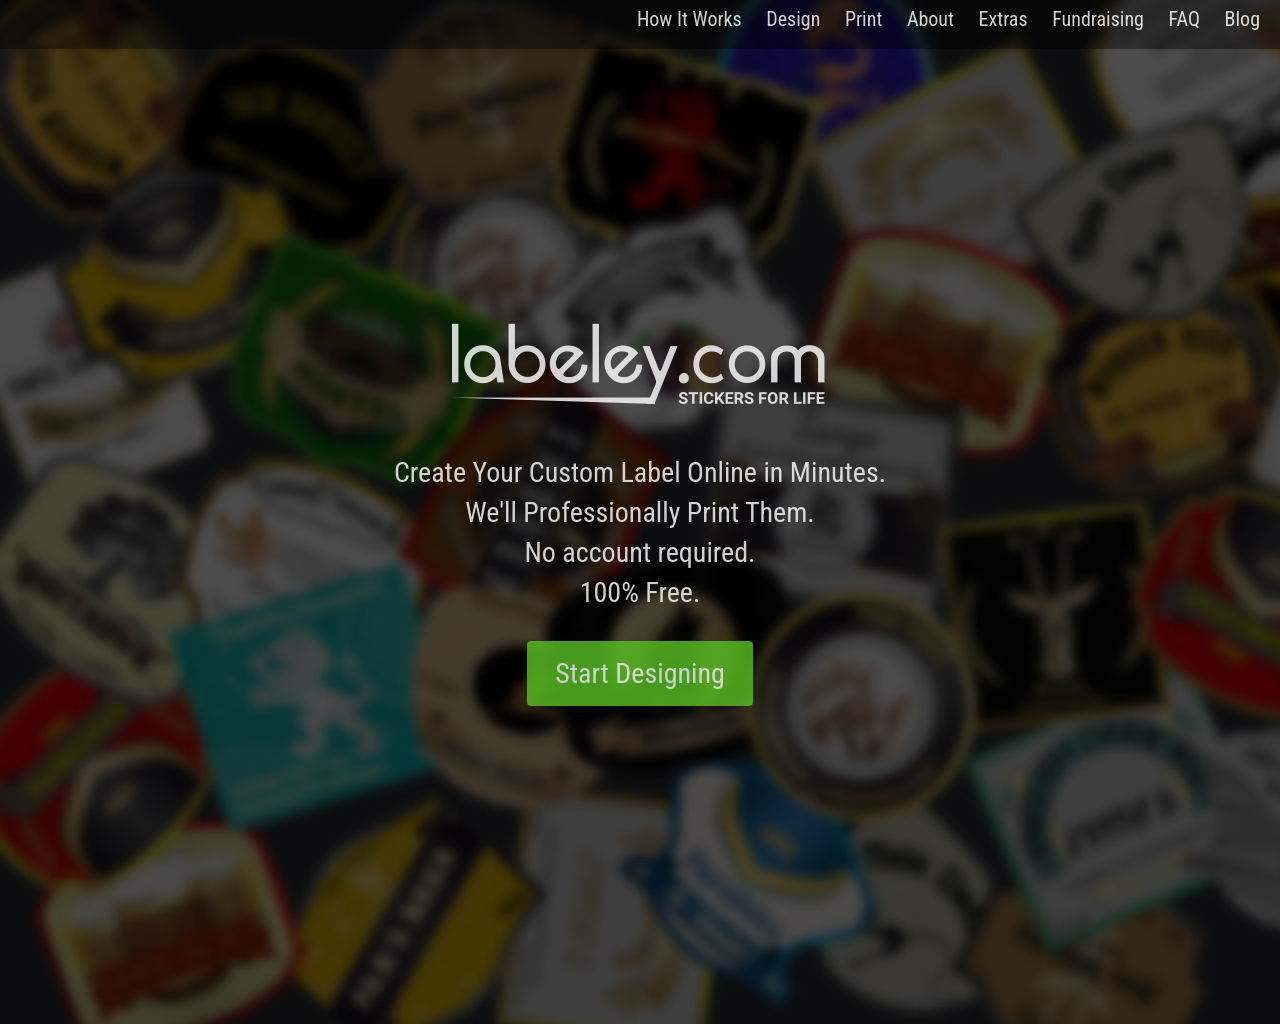 labeley.com